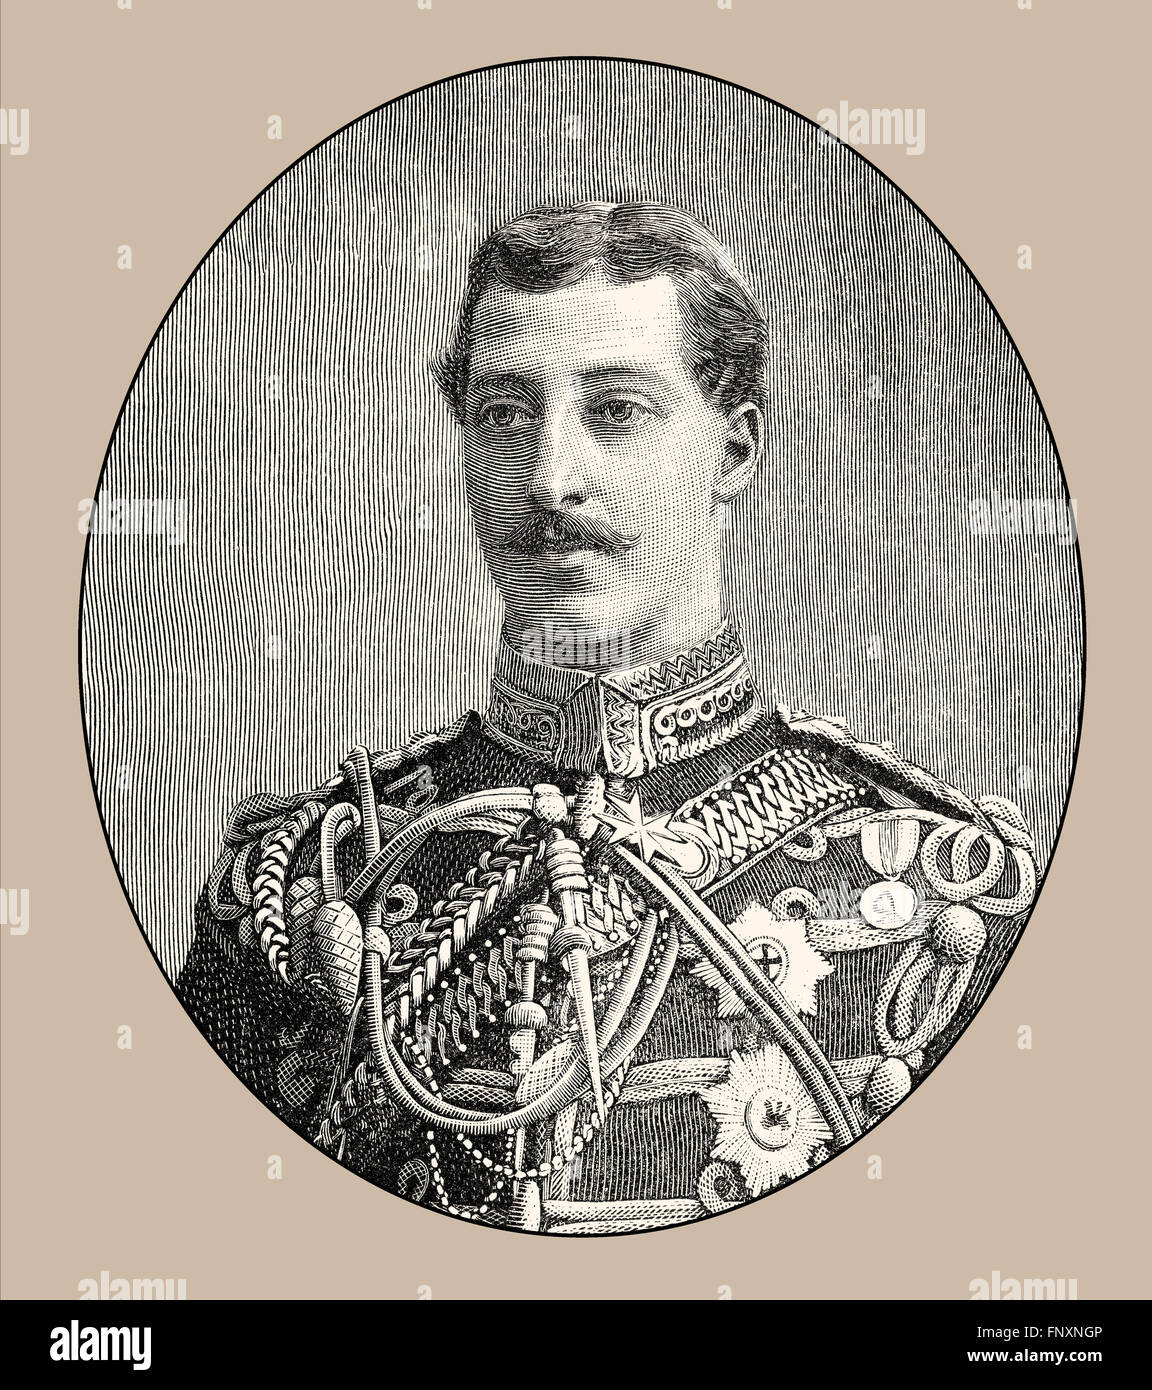 El príncipe Alberto Víctor, duque de Clarence y Avondale, 1864-1892 Foto de stock